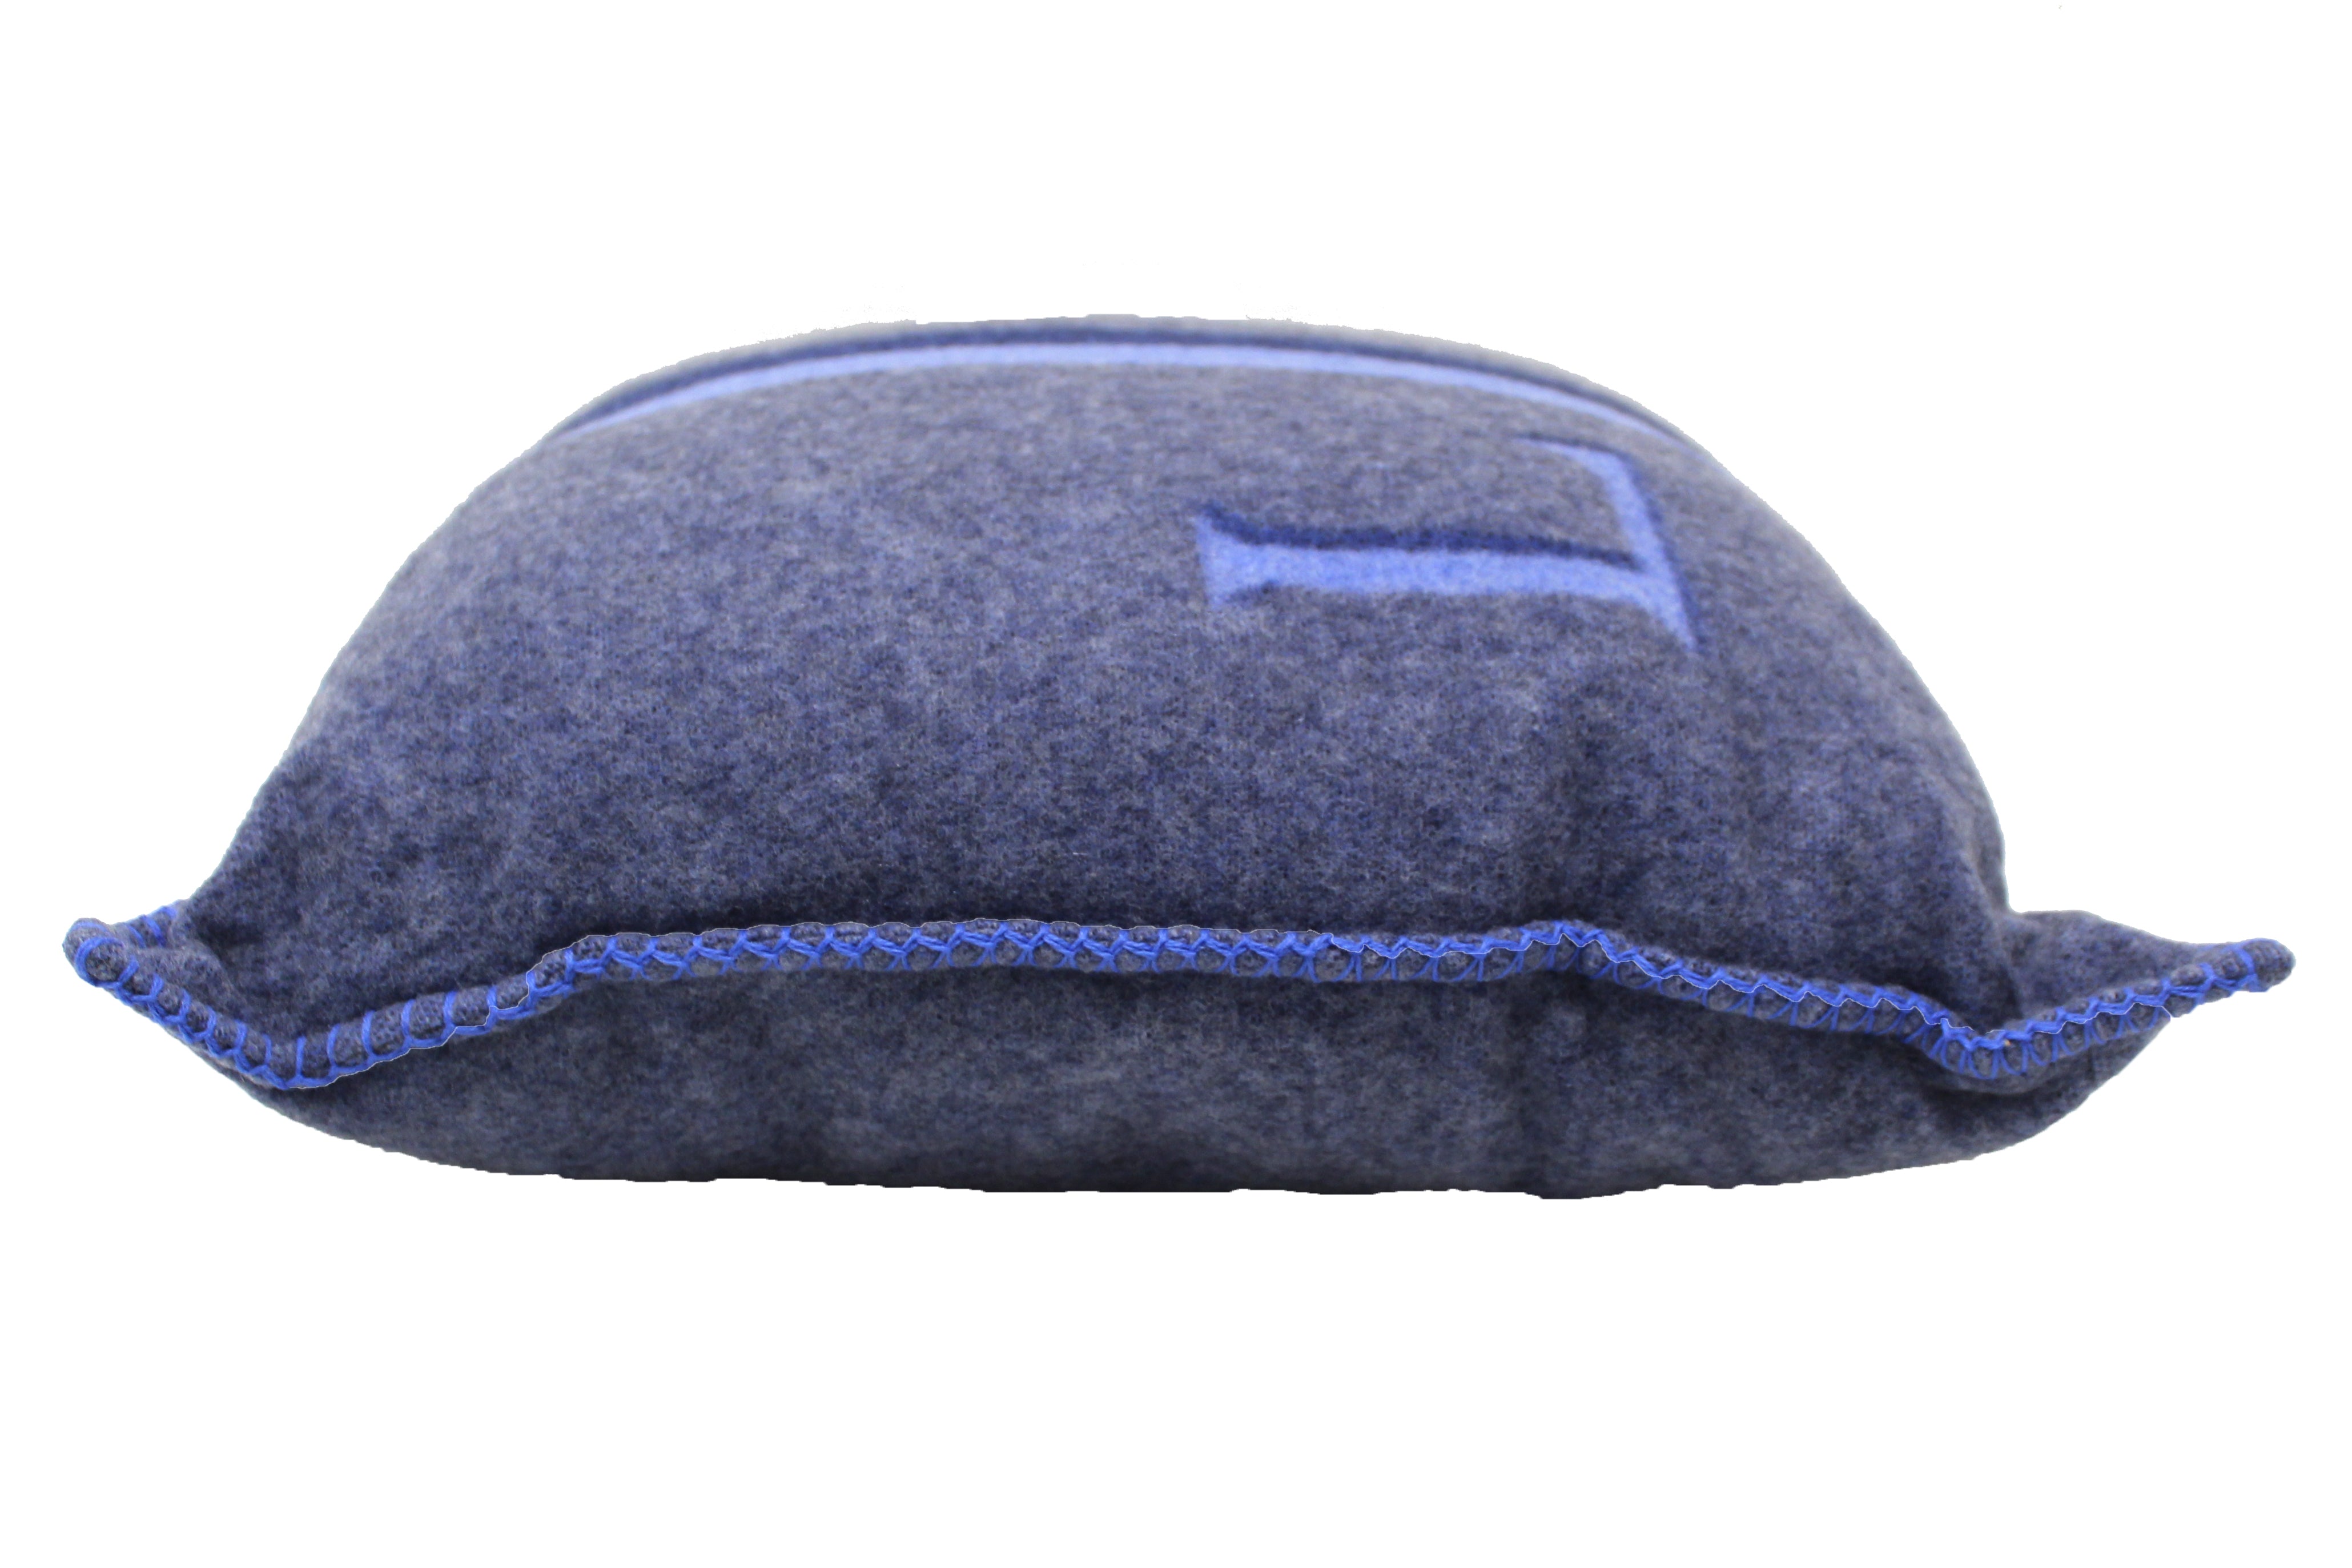 Authentic NEW Louis Vuitton Blue/Gray Wool Cashmere Cushion Pillow – Paris  Station Shop